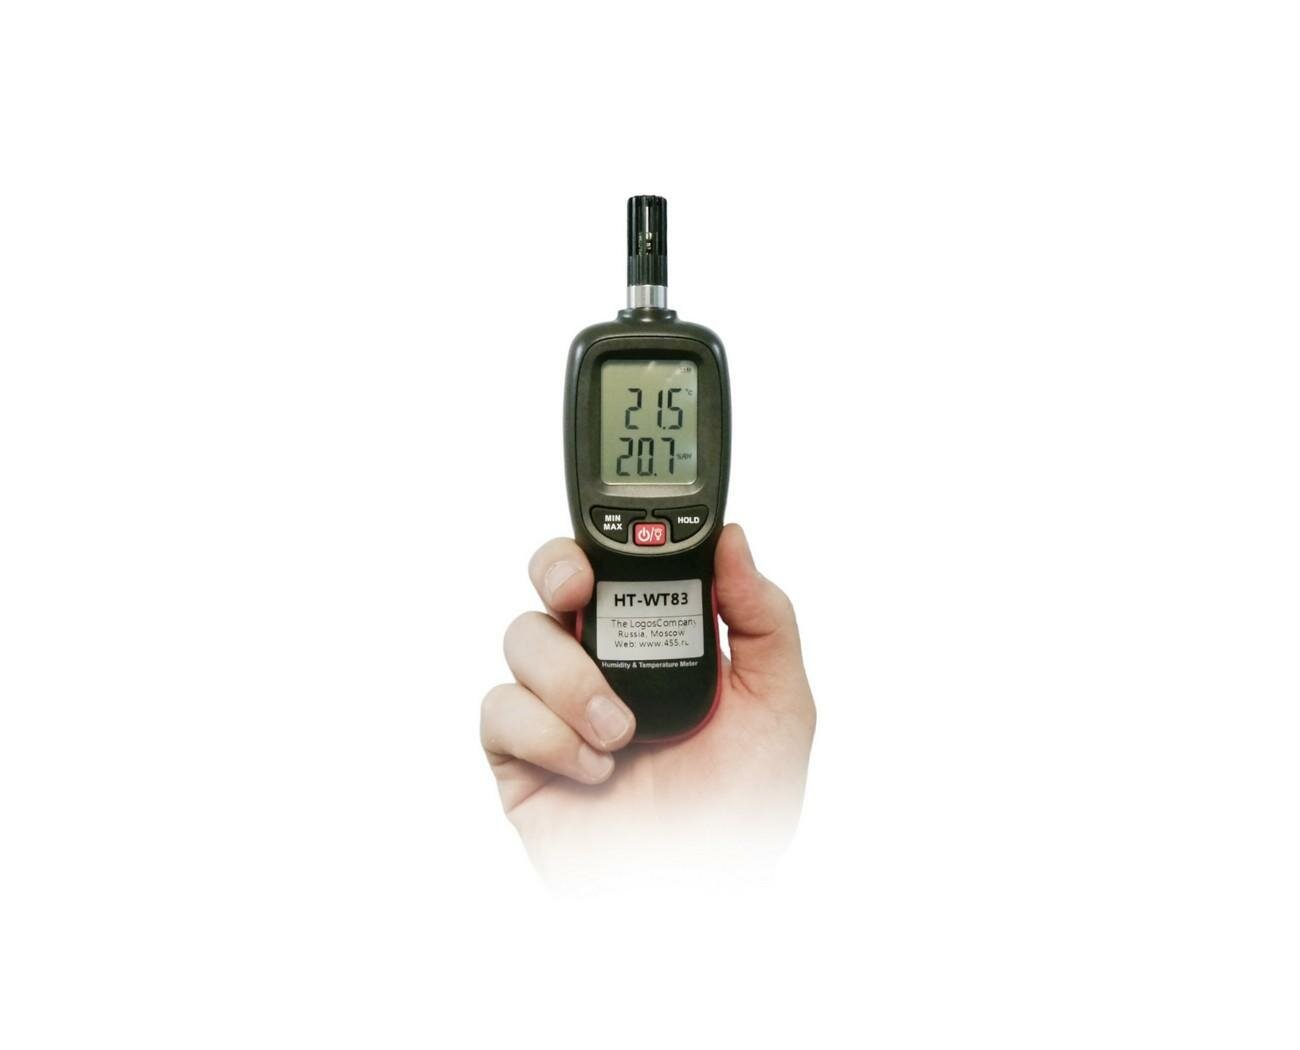 Термогигрометр для измерения показателей микроклимата Hti-WT83 (EU) (O43954IZ). Фиксация результатов. ЖК-дисплей с подсветкой